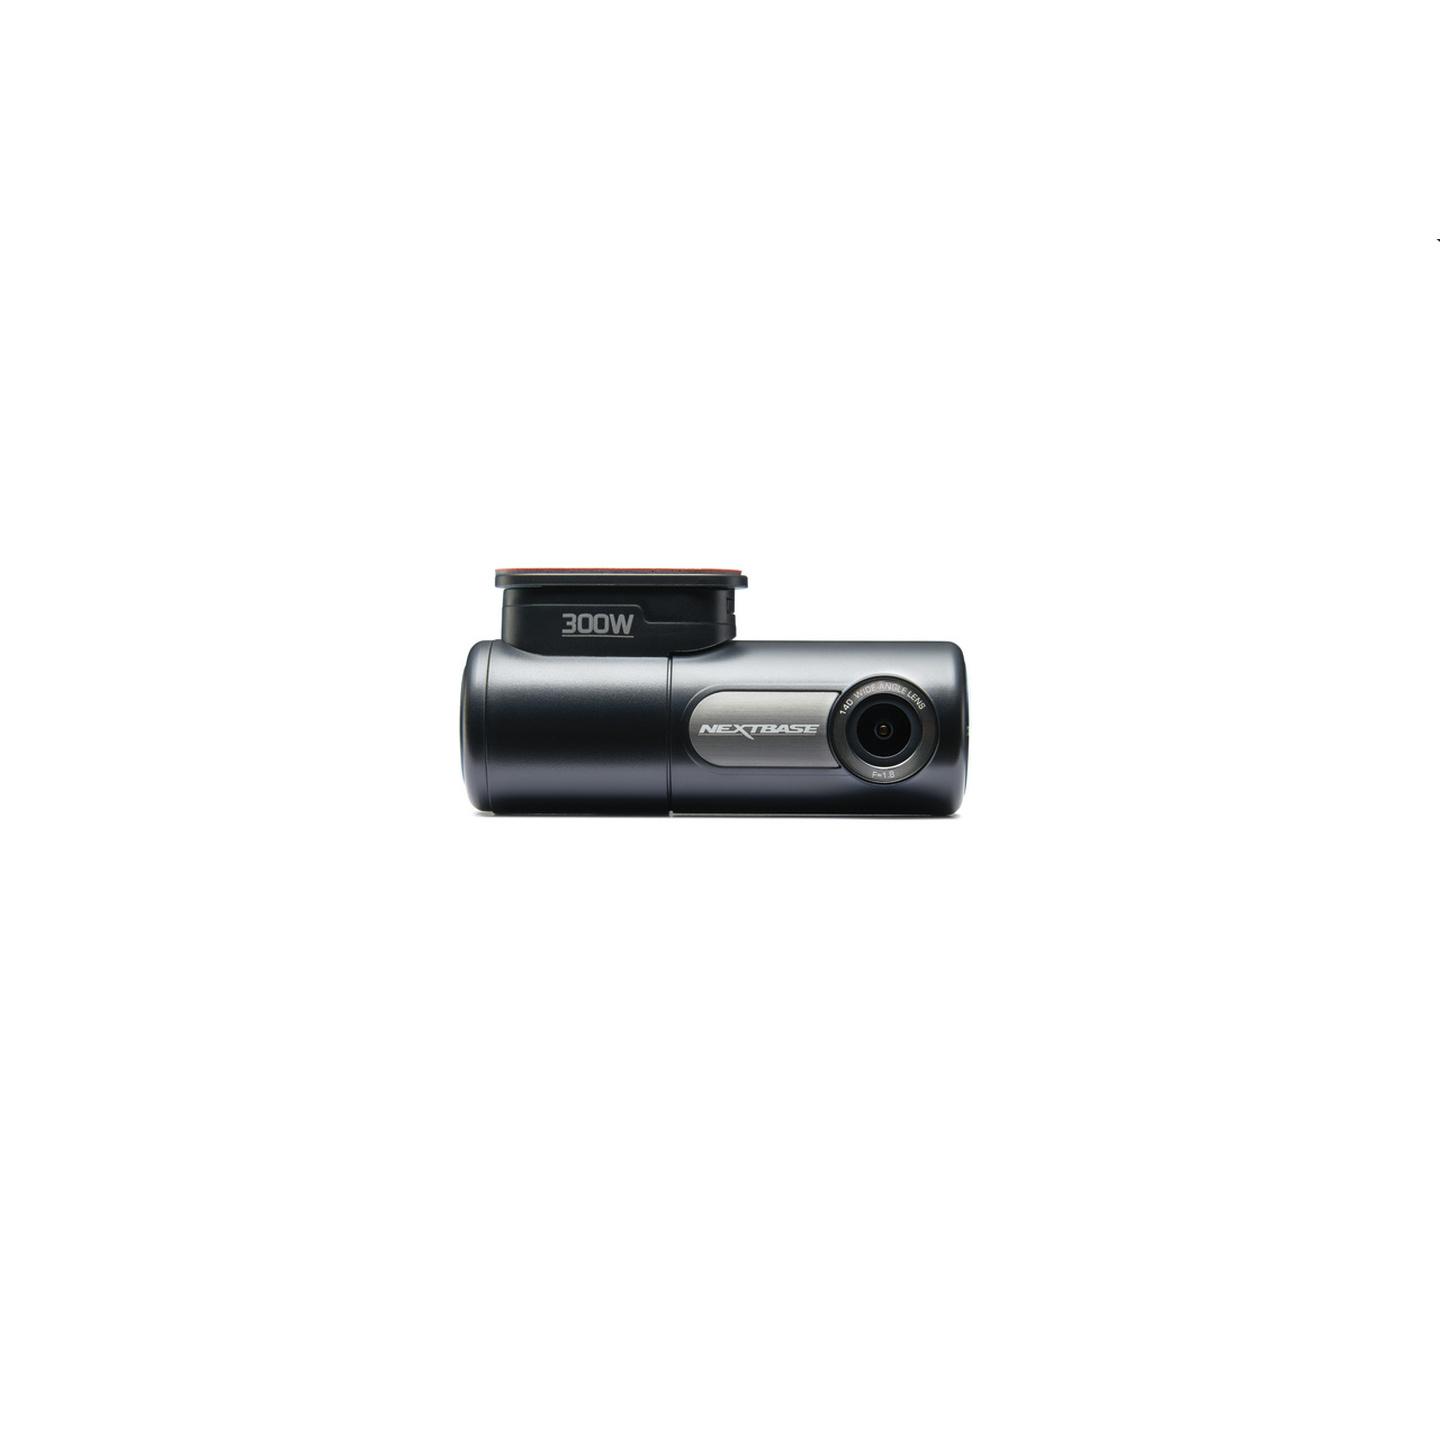 Nextbase Full High Definition Dash Camera 300W